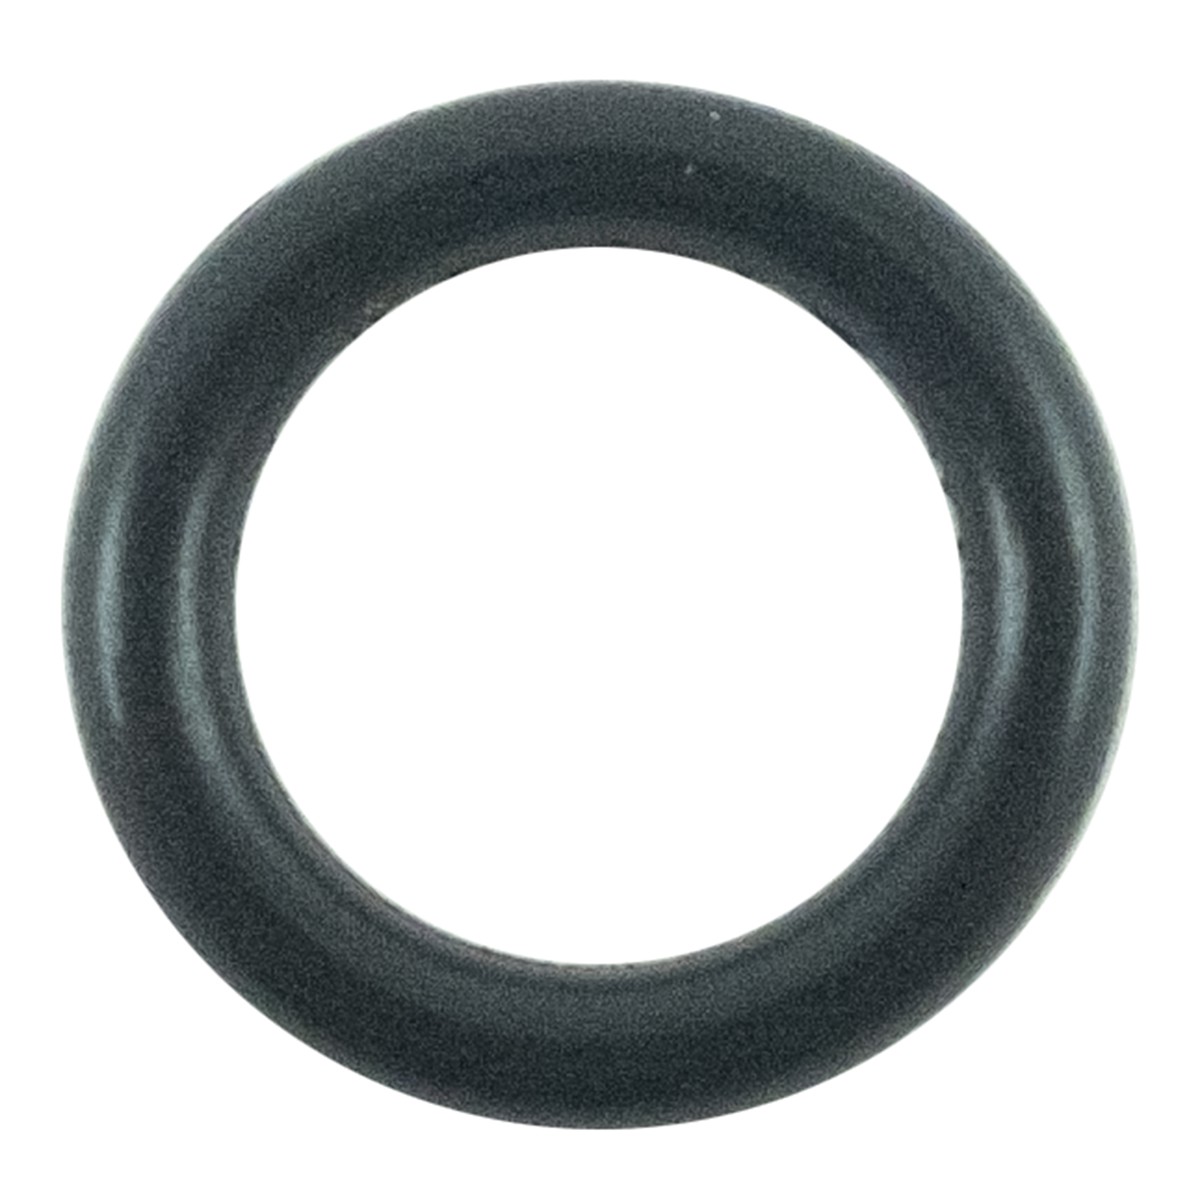 O-Ring 6,50 x 1,5 mm / LS MT3,35 / LS MT3,40 / LS MT3,50 / LS MT3,60 / S804007010 / 40029237